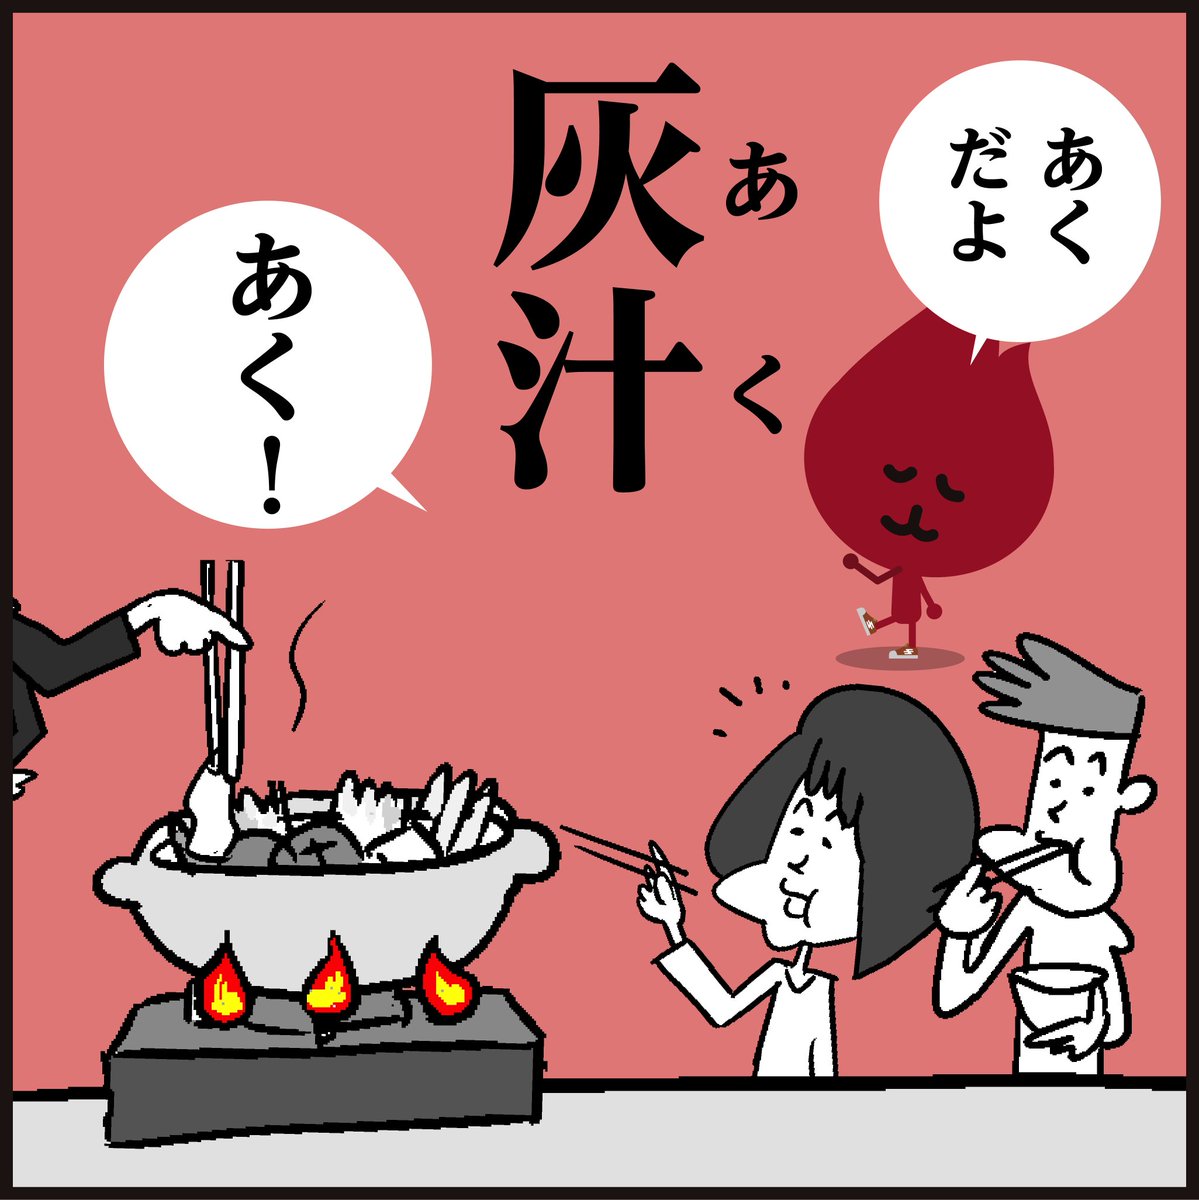 漢字「灰汁」読めましたか?
(寒いと鍋がいいですね〜🍲)
#イラスト #4コマ漫画 #クイズ 
#豆知識 #冬 #料理 